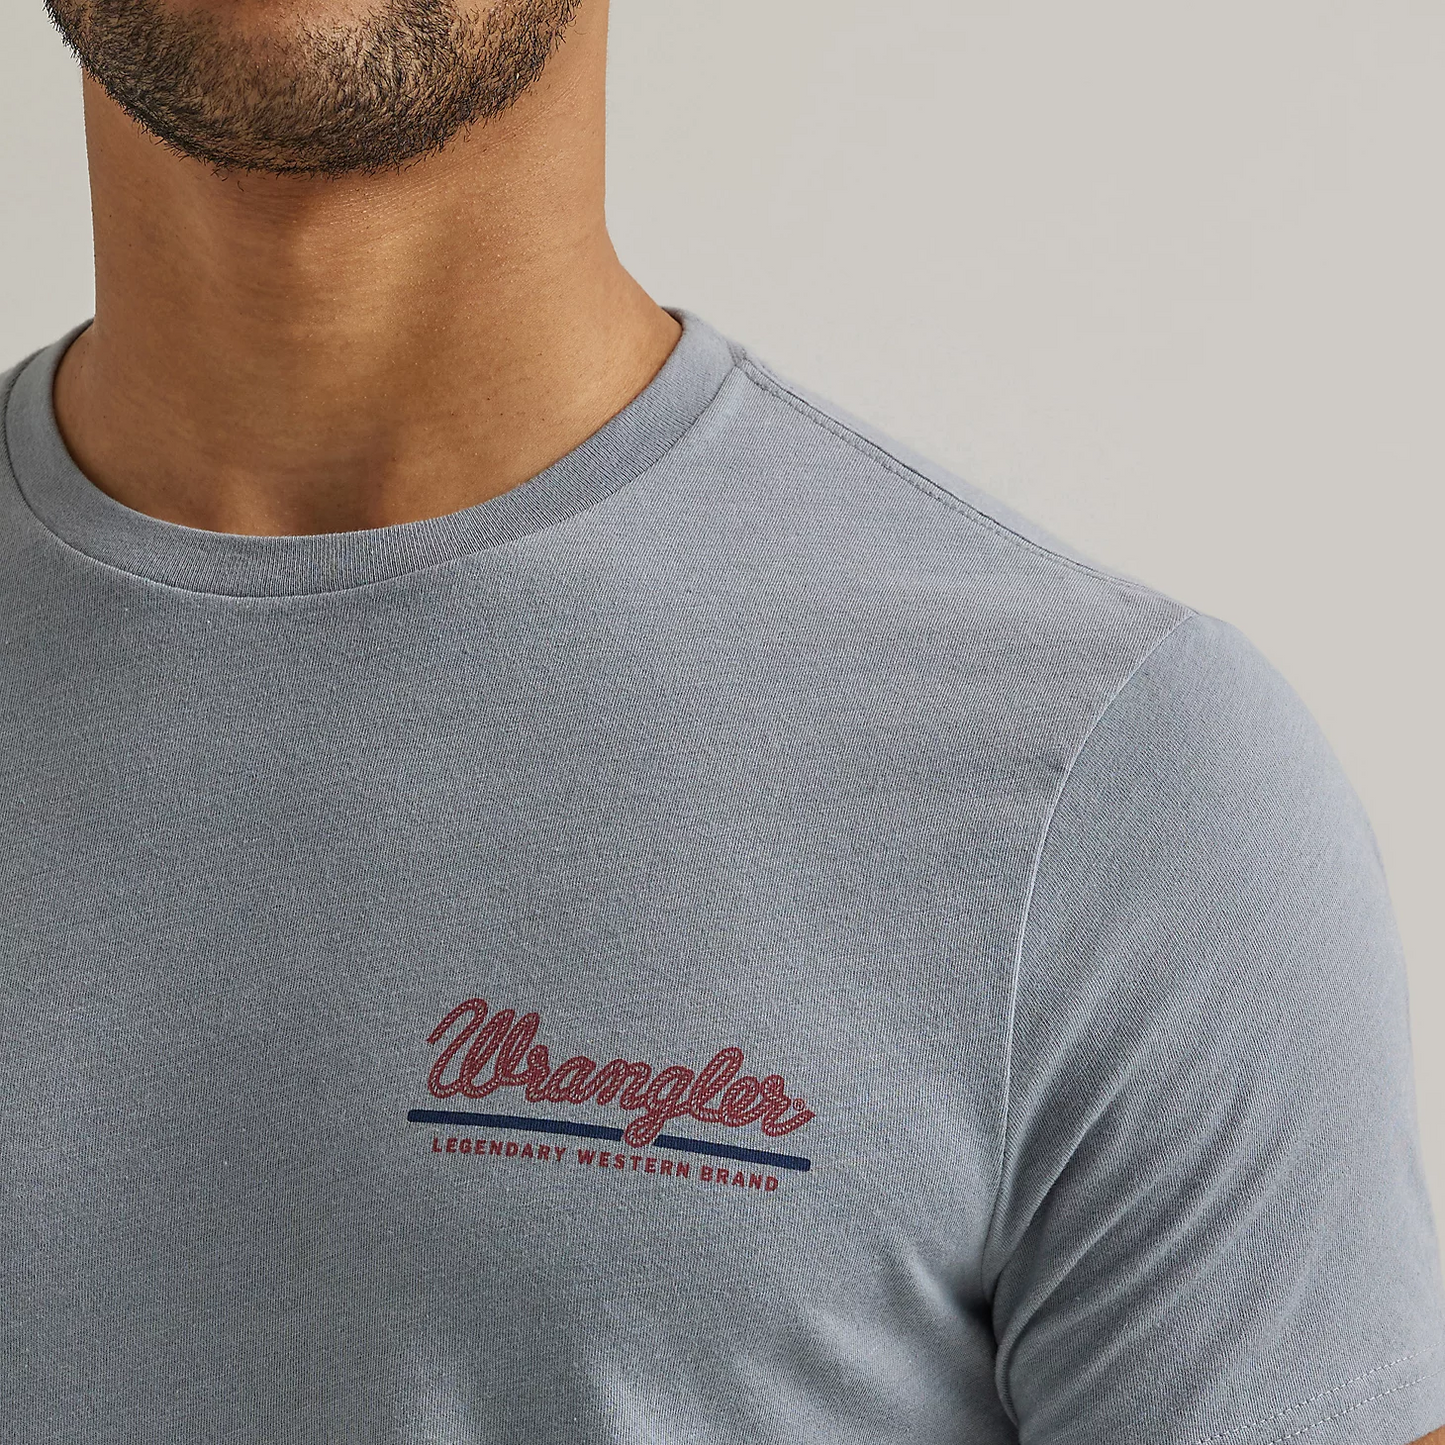 Wrangler Men's Legendary Western Brand T-Shirt - Tradewinds